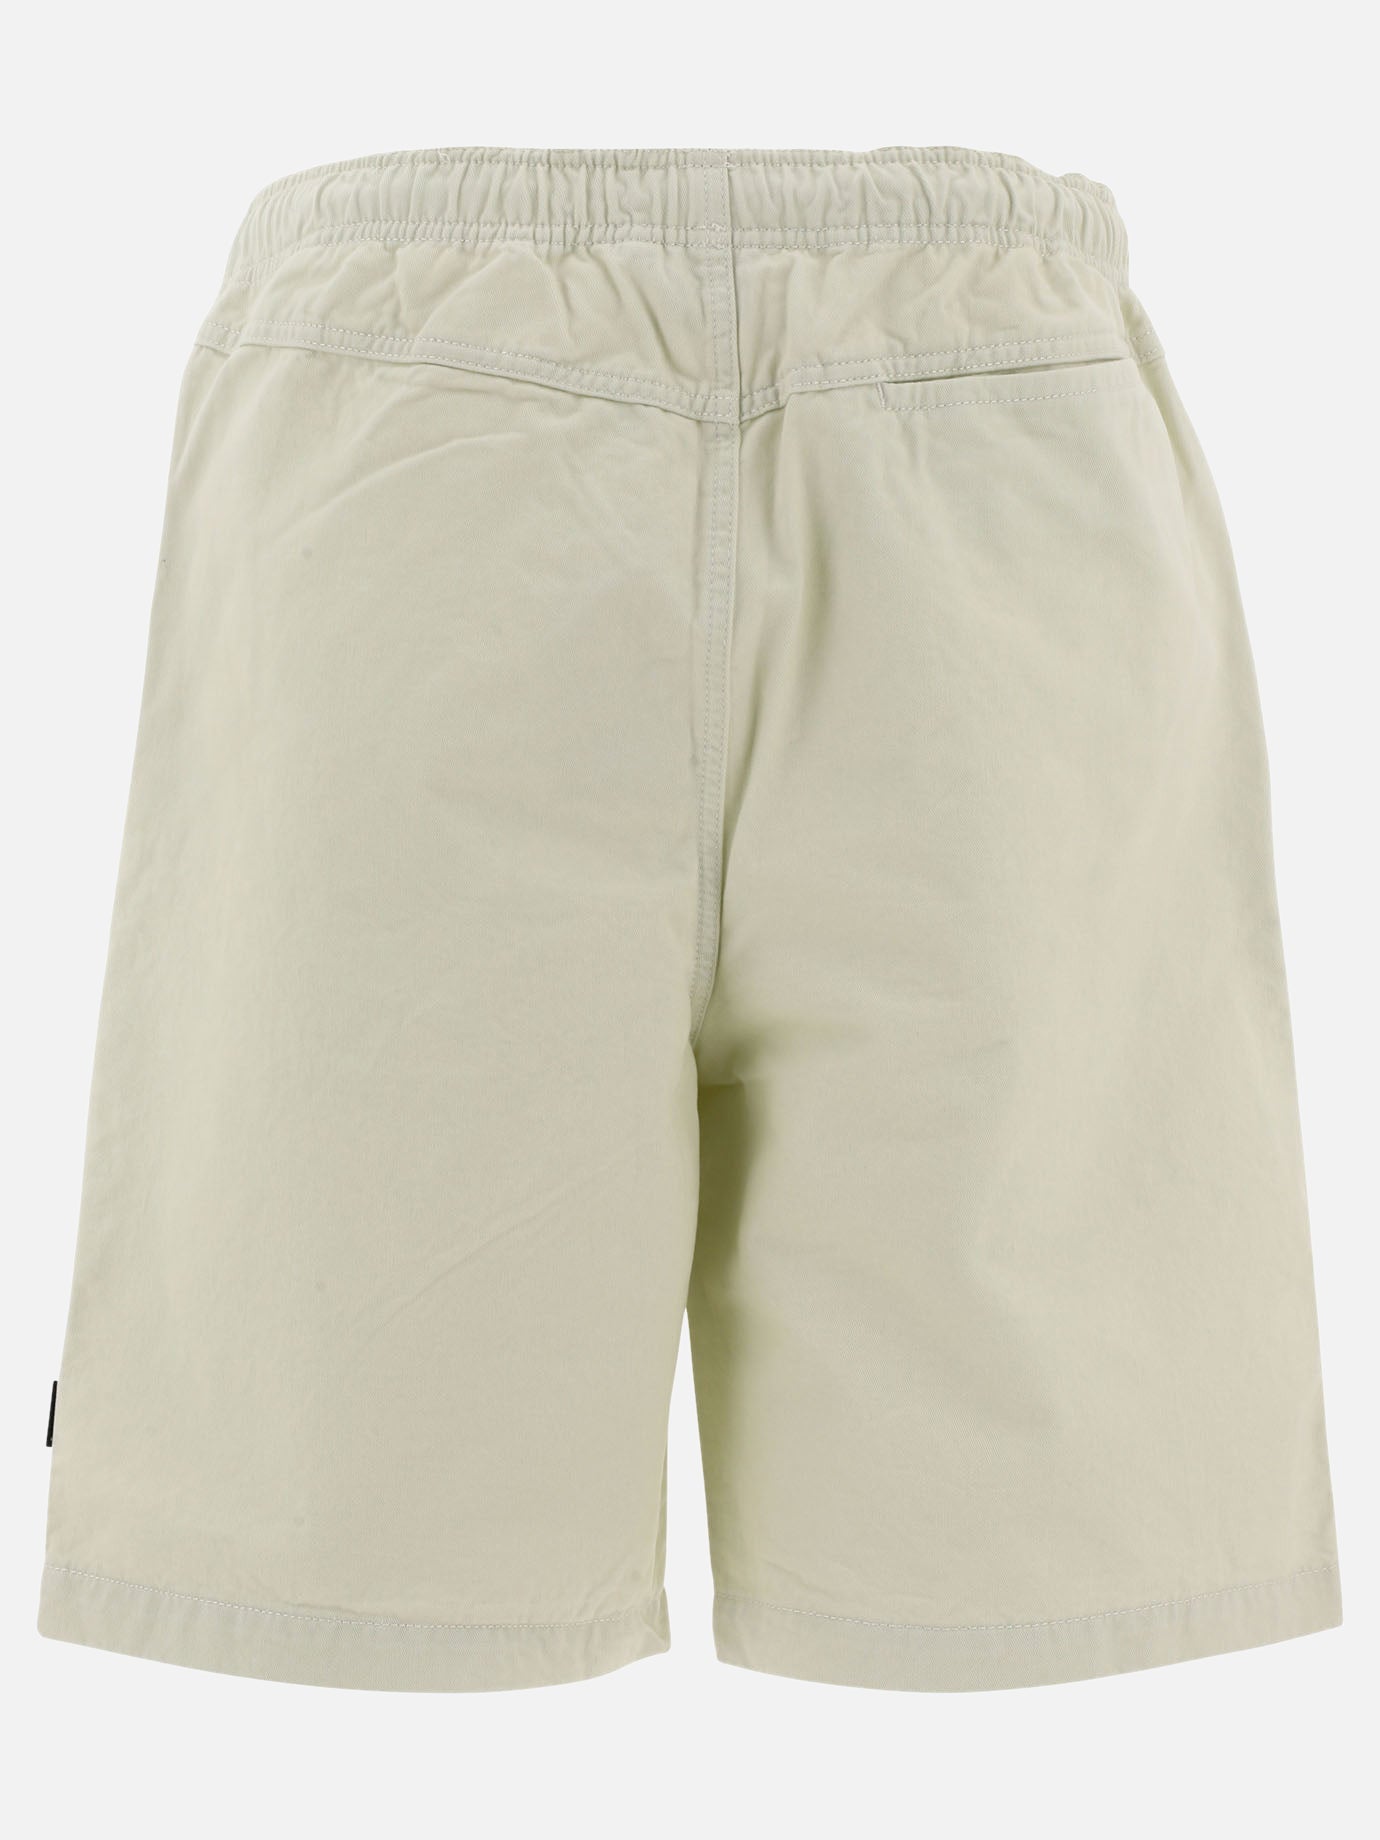 "Brushed Beach" shorts